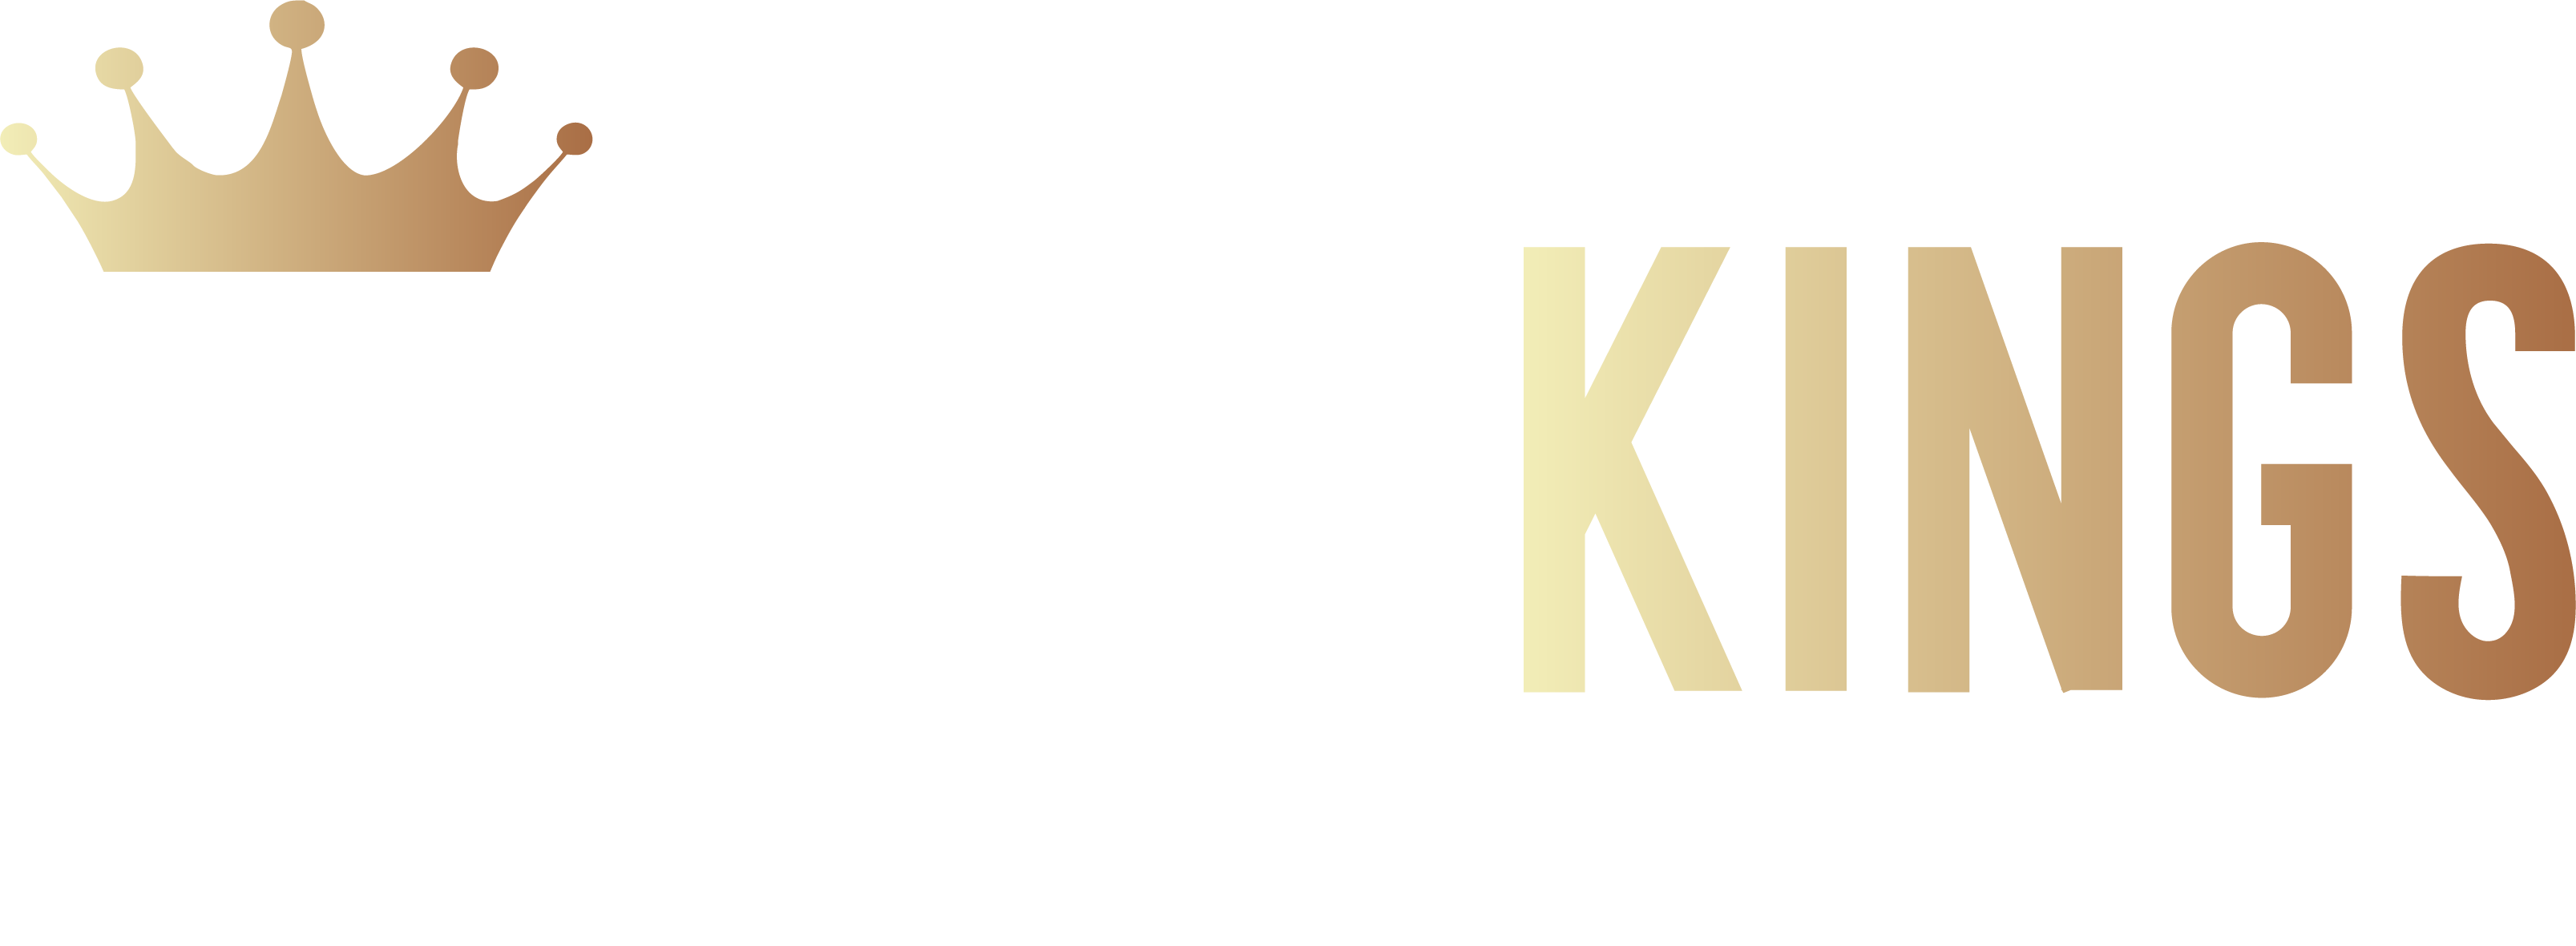 RevKings